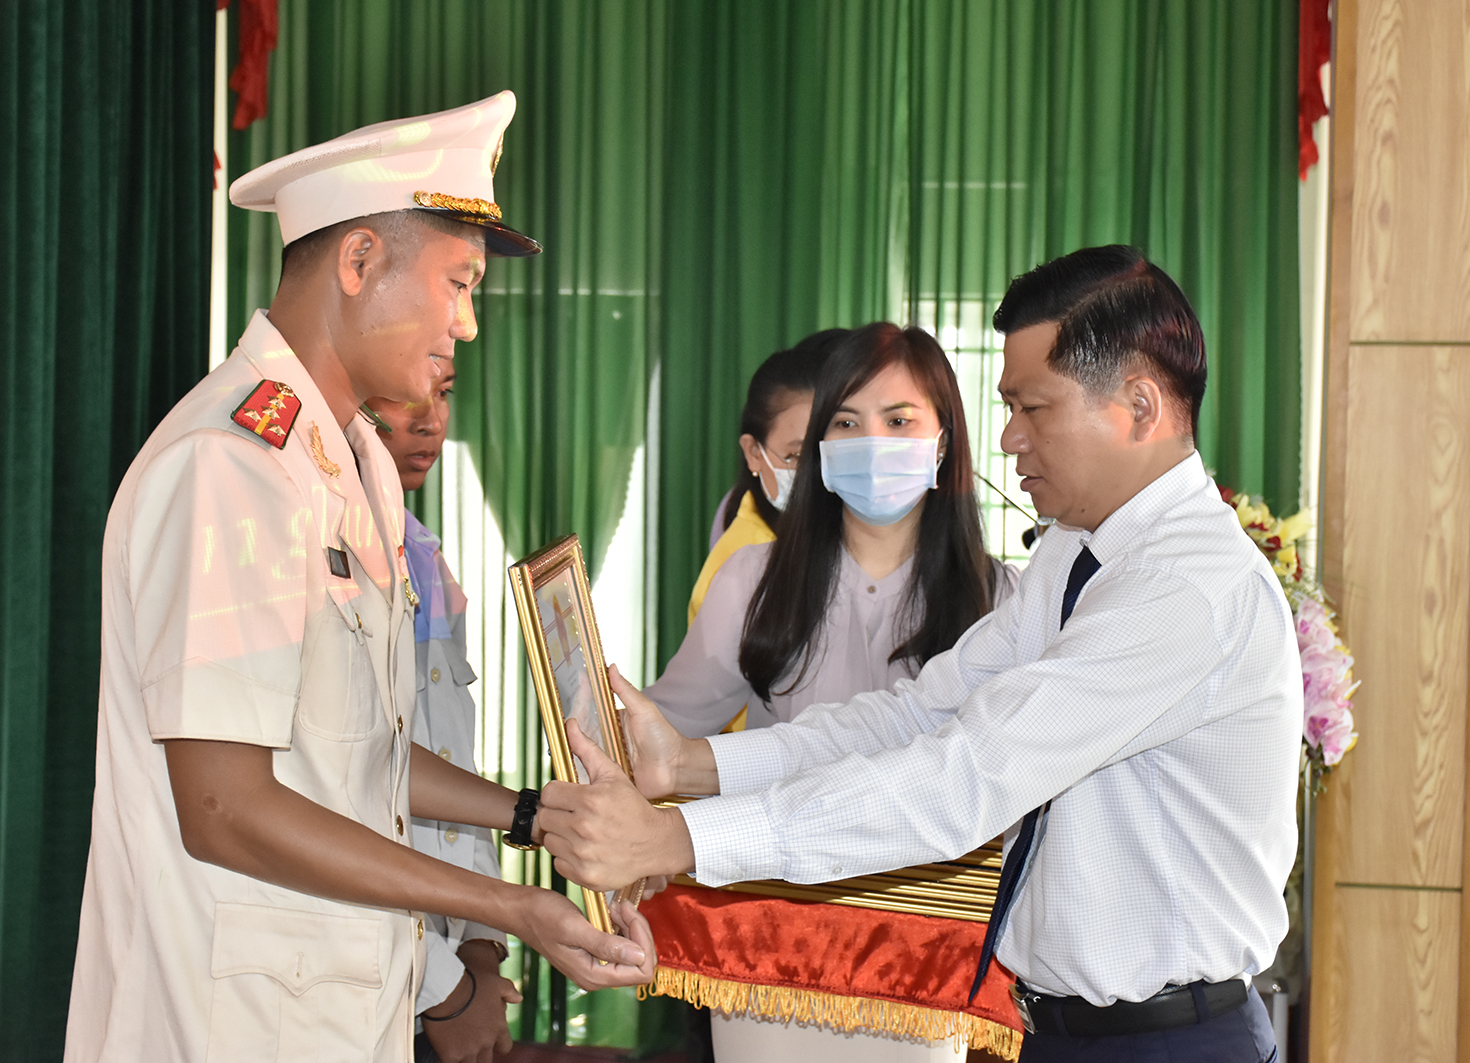 Ông Trần Văn Tuấn, Phó Chủ tịch UBND tỉnh trao bằng khen cho Trung úy Thái Ngô Hiếu, Phòng Cảnh sát PCCC & cứu nạn cứu hộ Công an tỉnh Đồng Nai vì đã dũng cảm cứu người bị đuối nước.